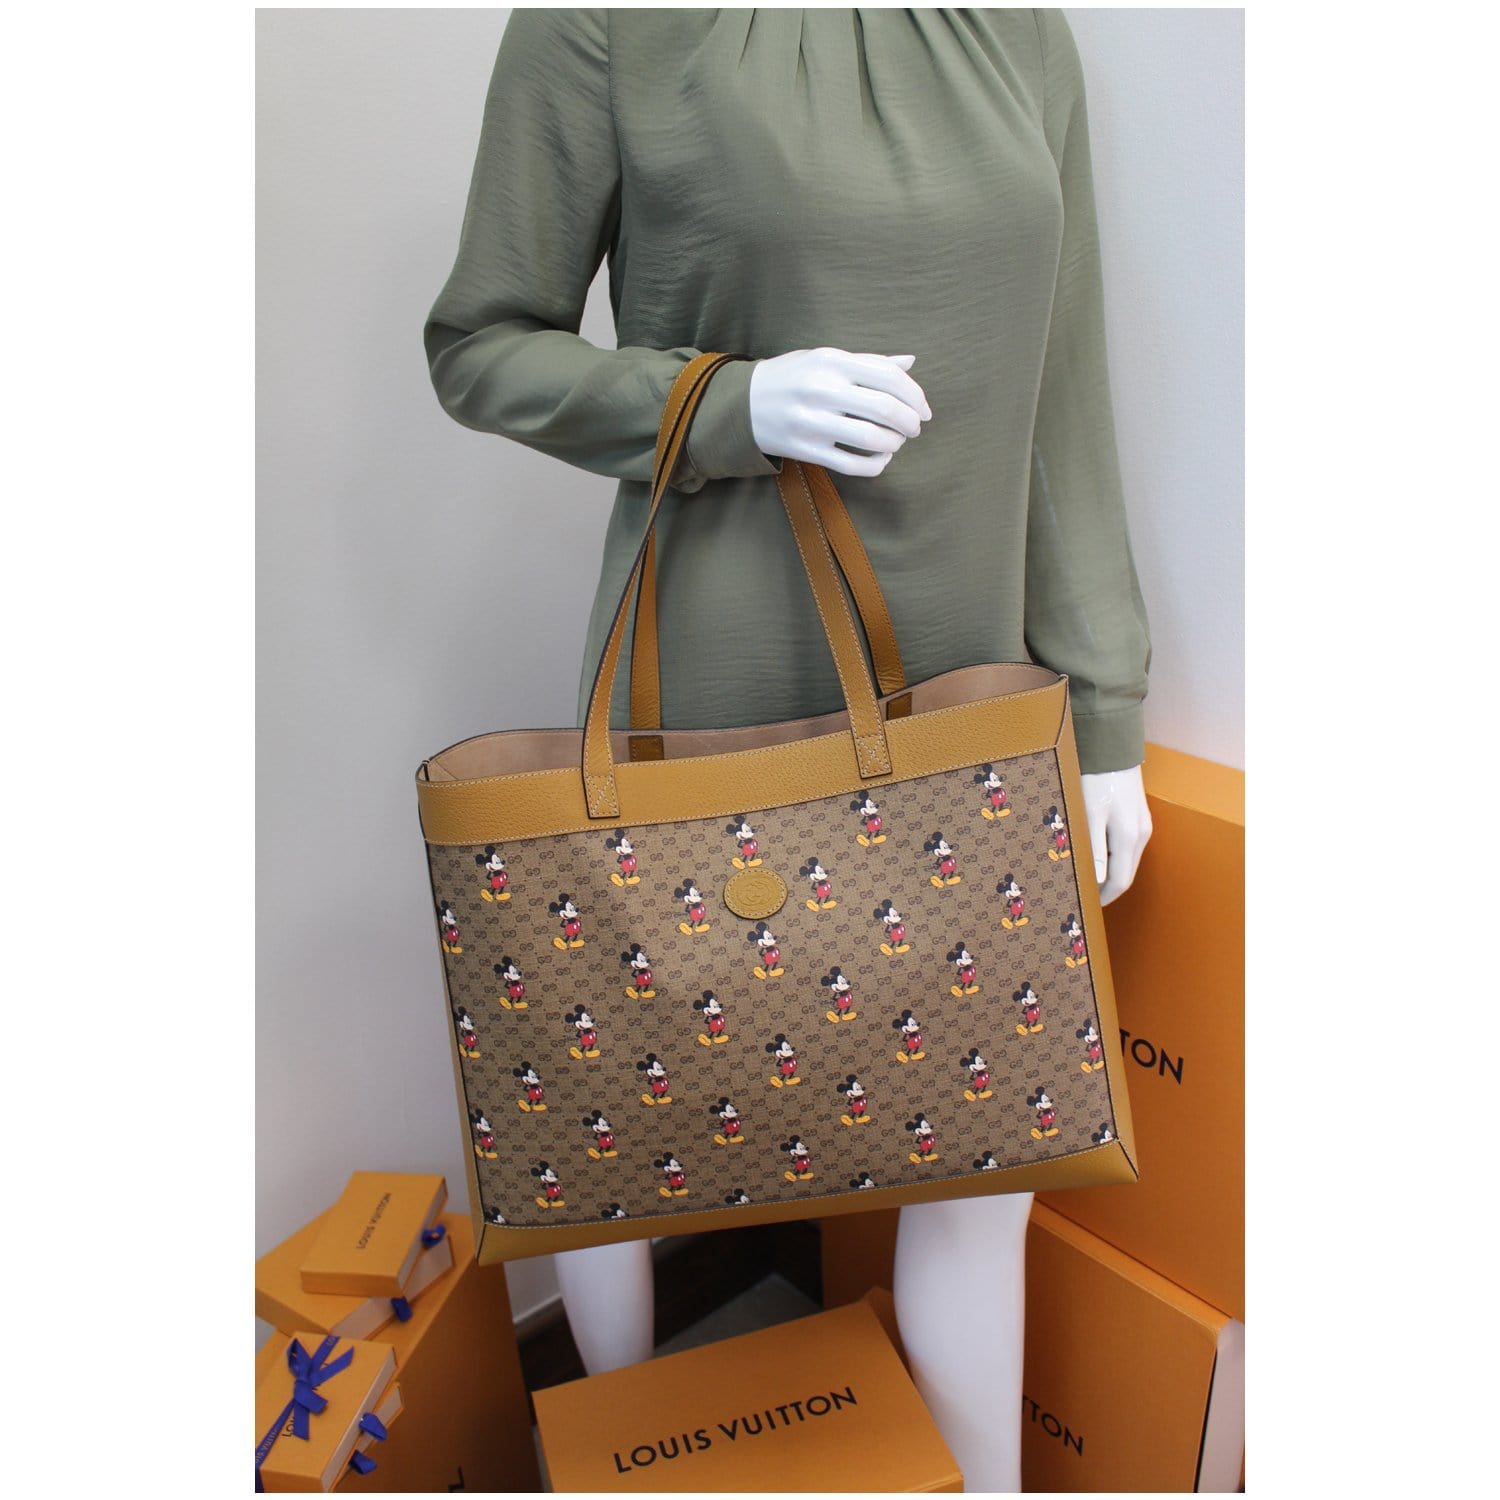 Gucci Gucci Tote Bag Mini Gg Supreme 547947 Disney Mickey Pvc Leather Beige  Gold Hardware Women's Auction